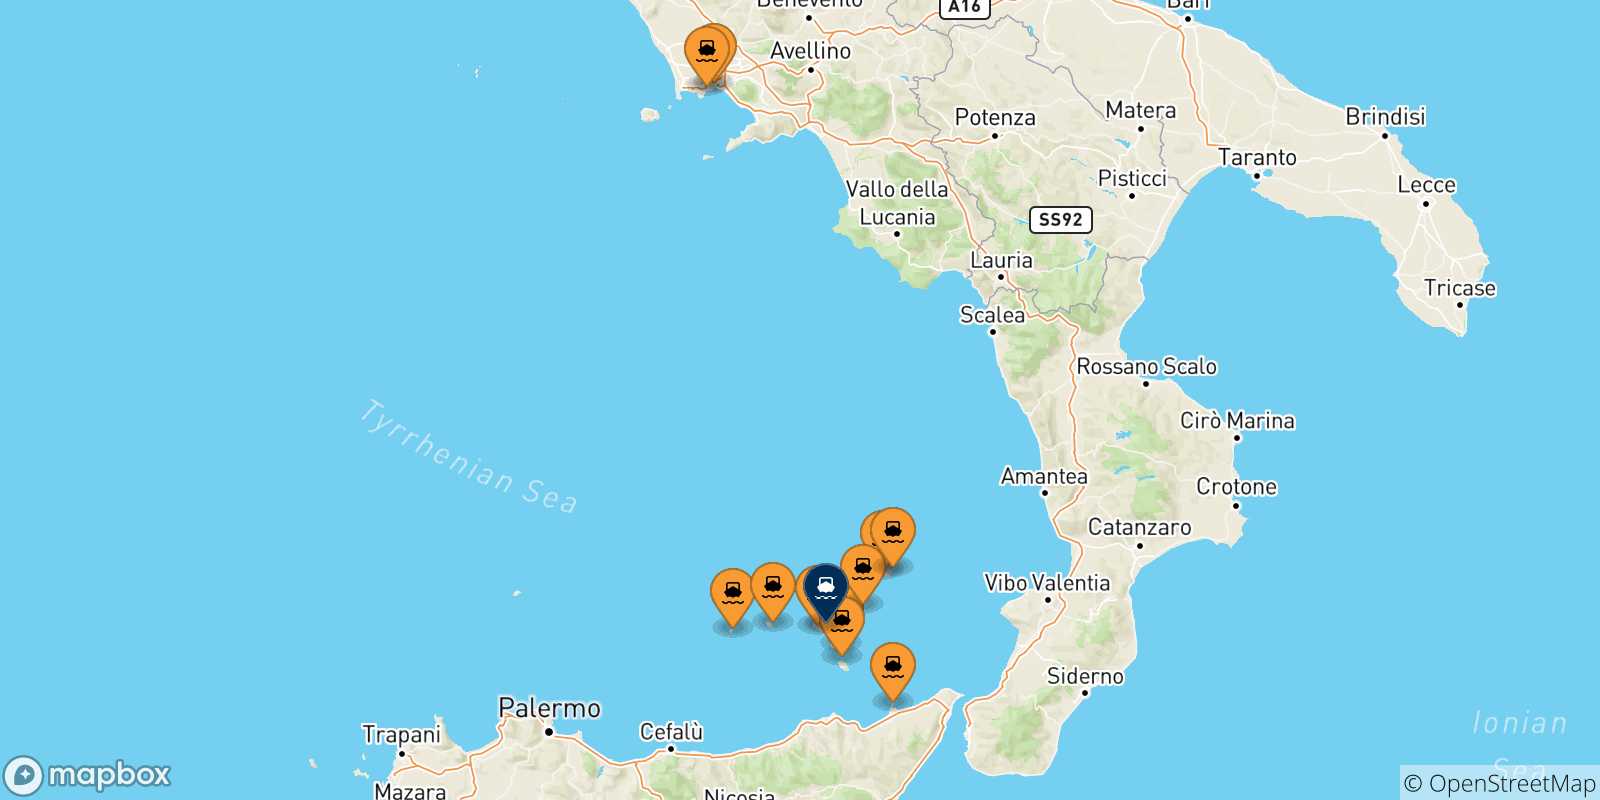 Mappa delle possibili rotte tra l'Italia e Santa Marina (Salina)